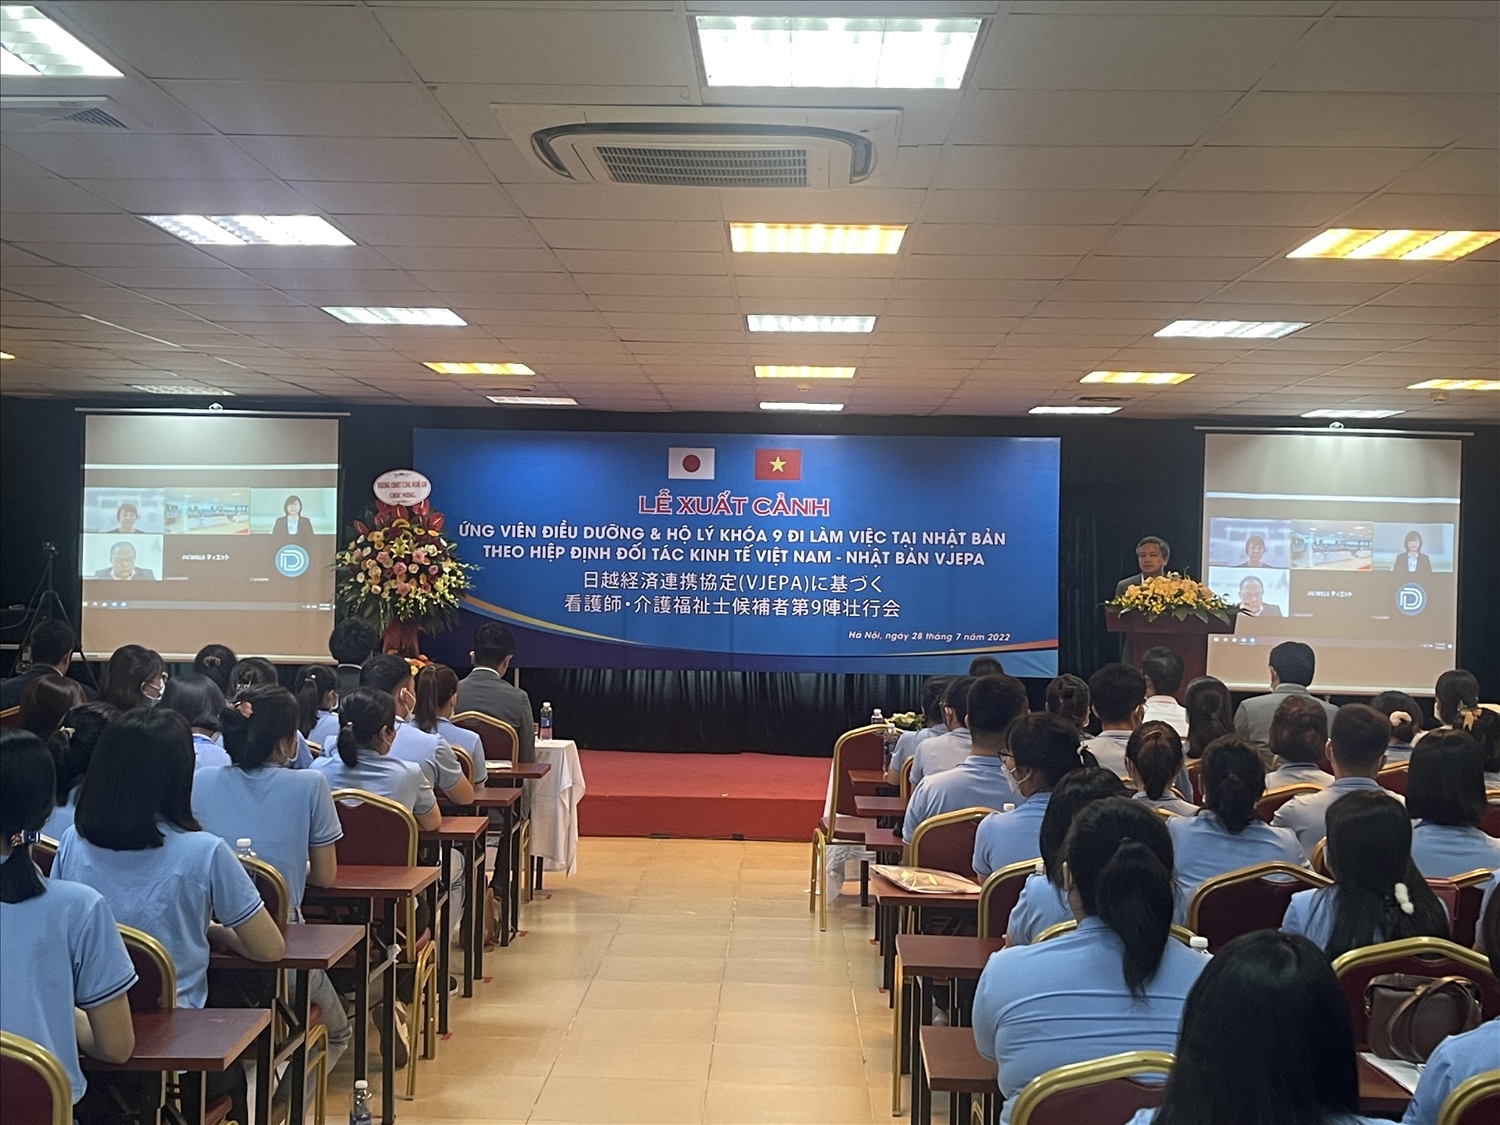  Lễ xuất cảnh cho 150 ứng viên điều dưỡng, hộ lý khóa 9. (Ảnh: PV/Vietnam+)